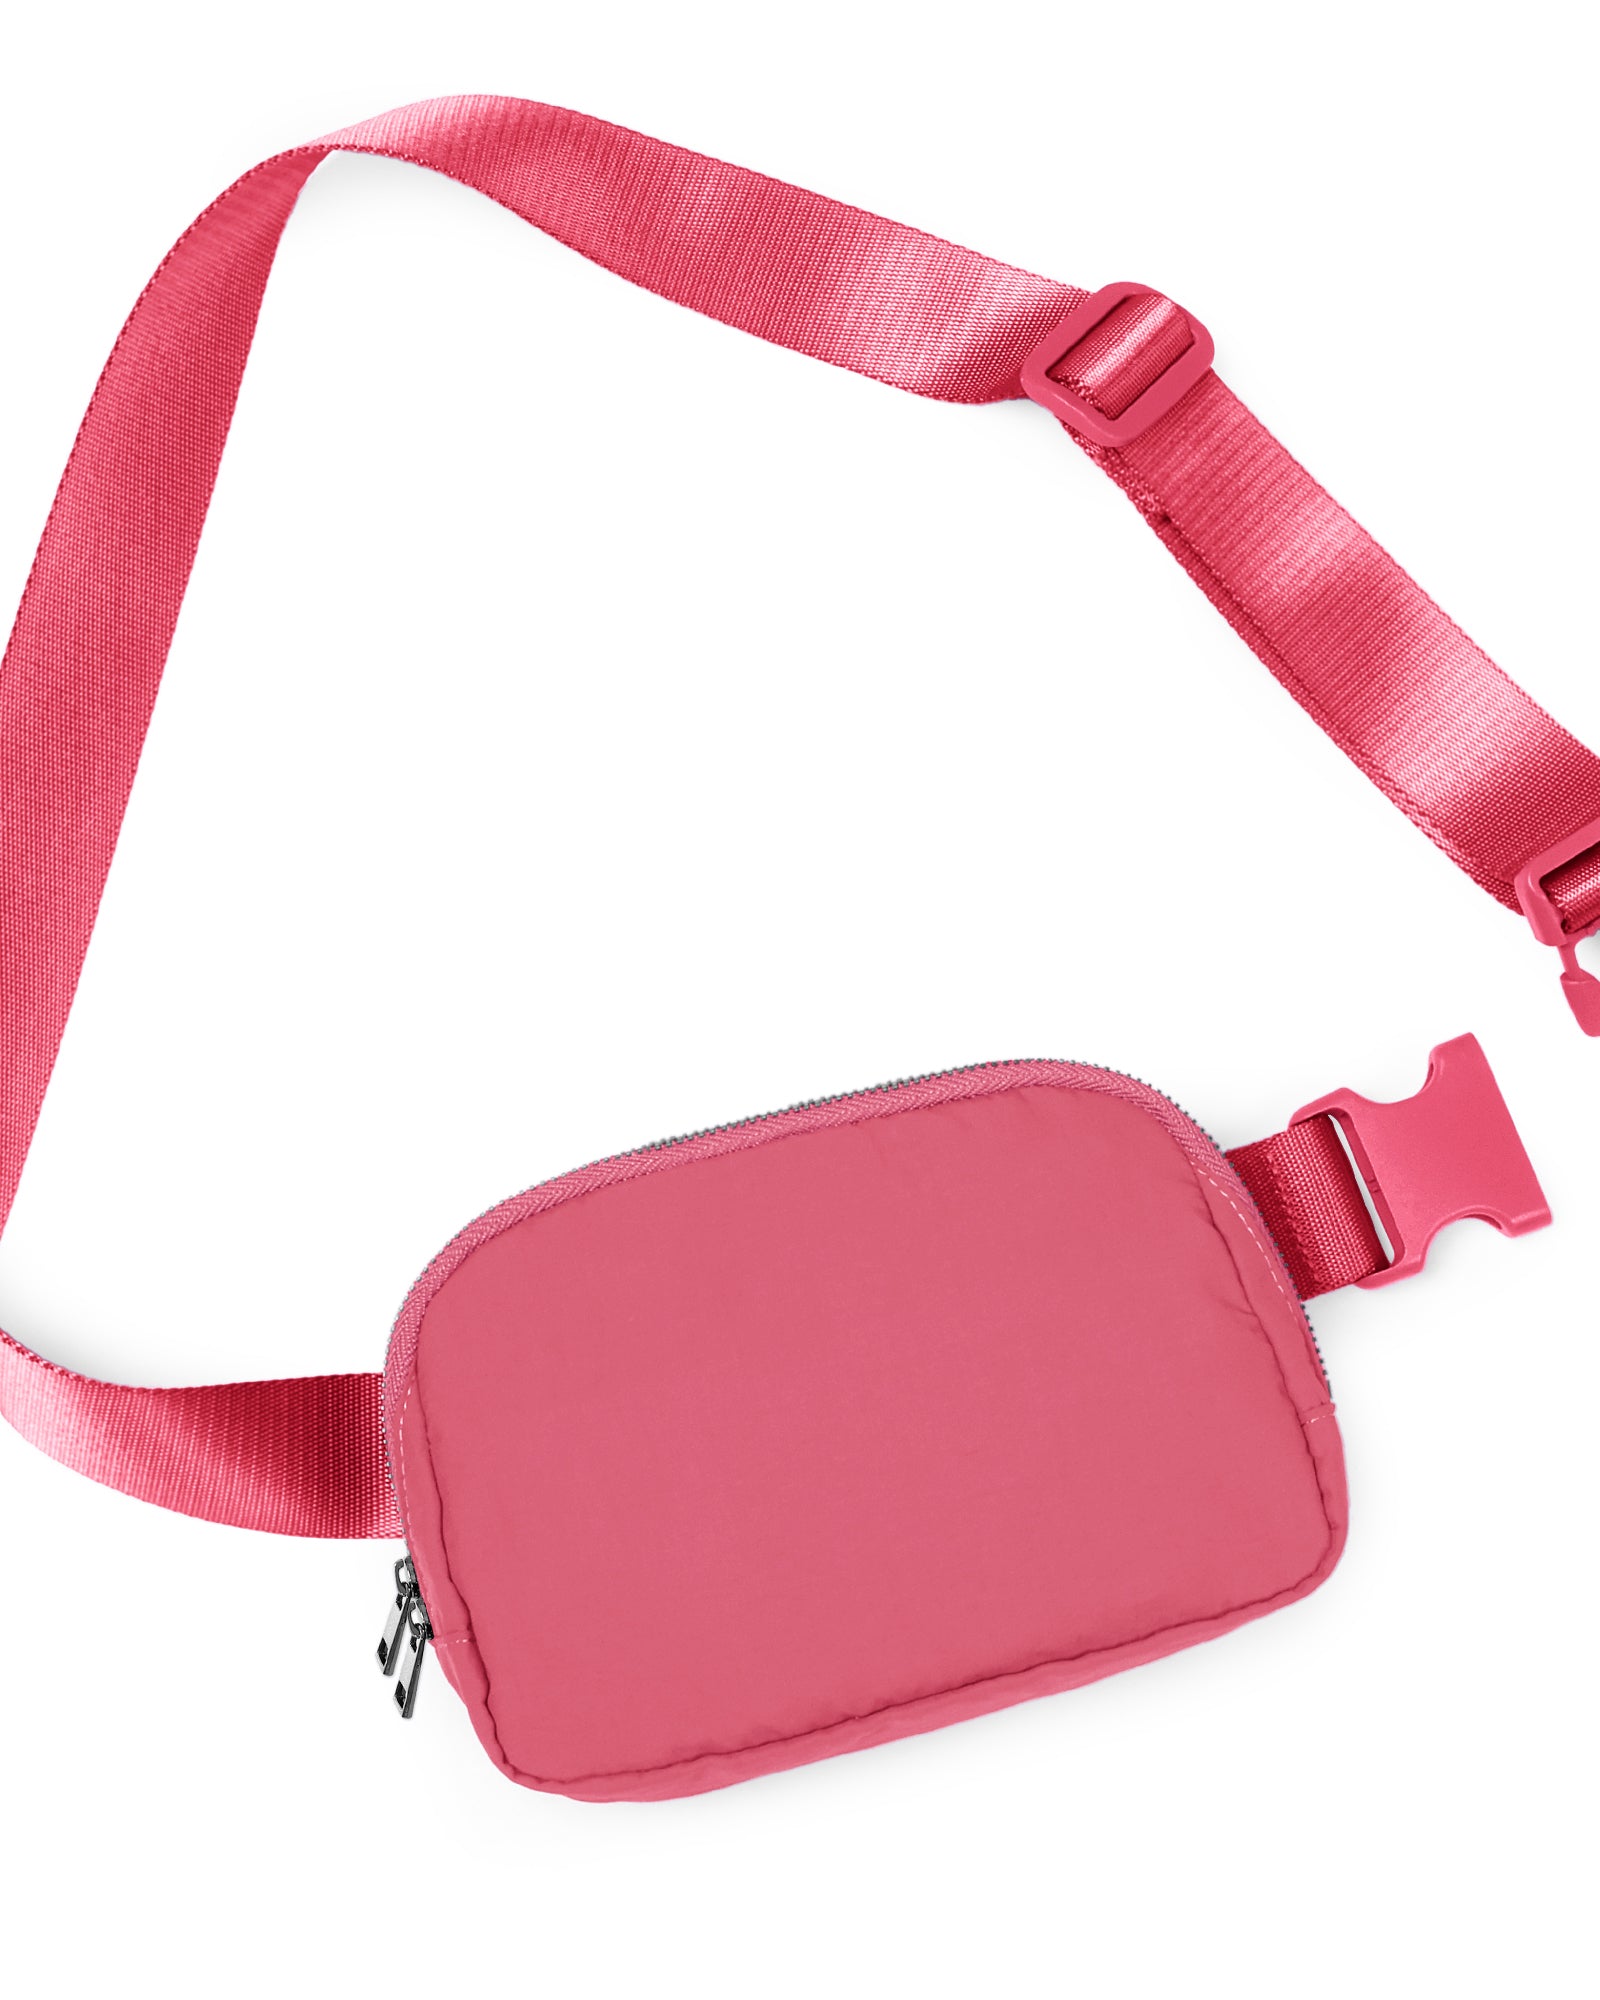 Unisex Two-Way Zip Mini Belt Bag Raspberry 8" x 2" x 5.5" - ododos